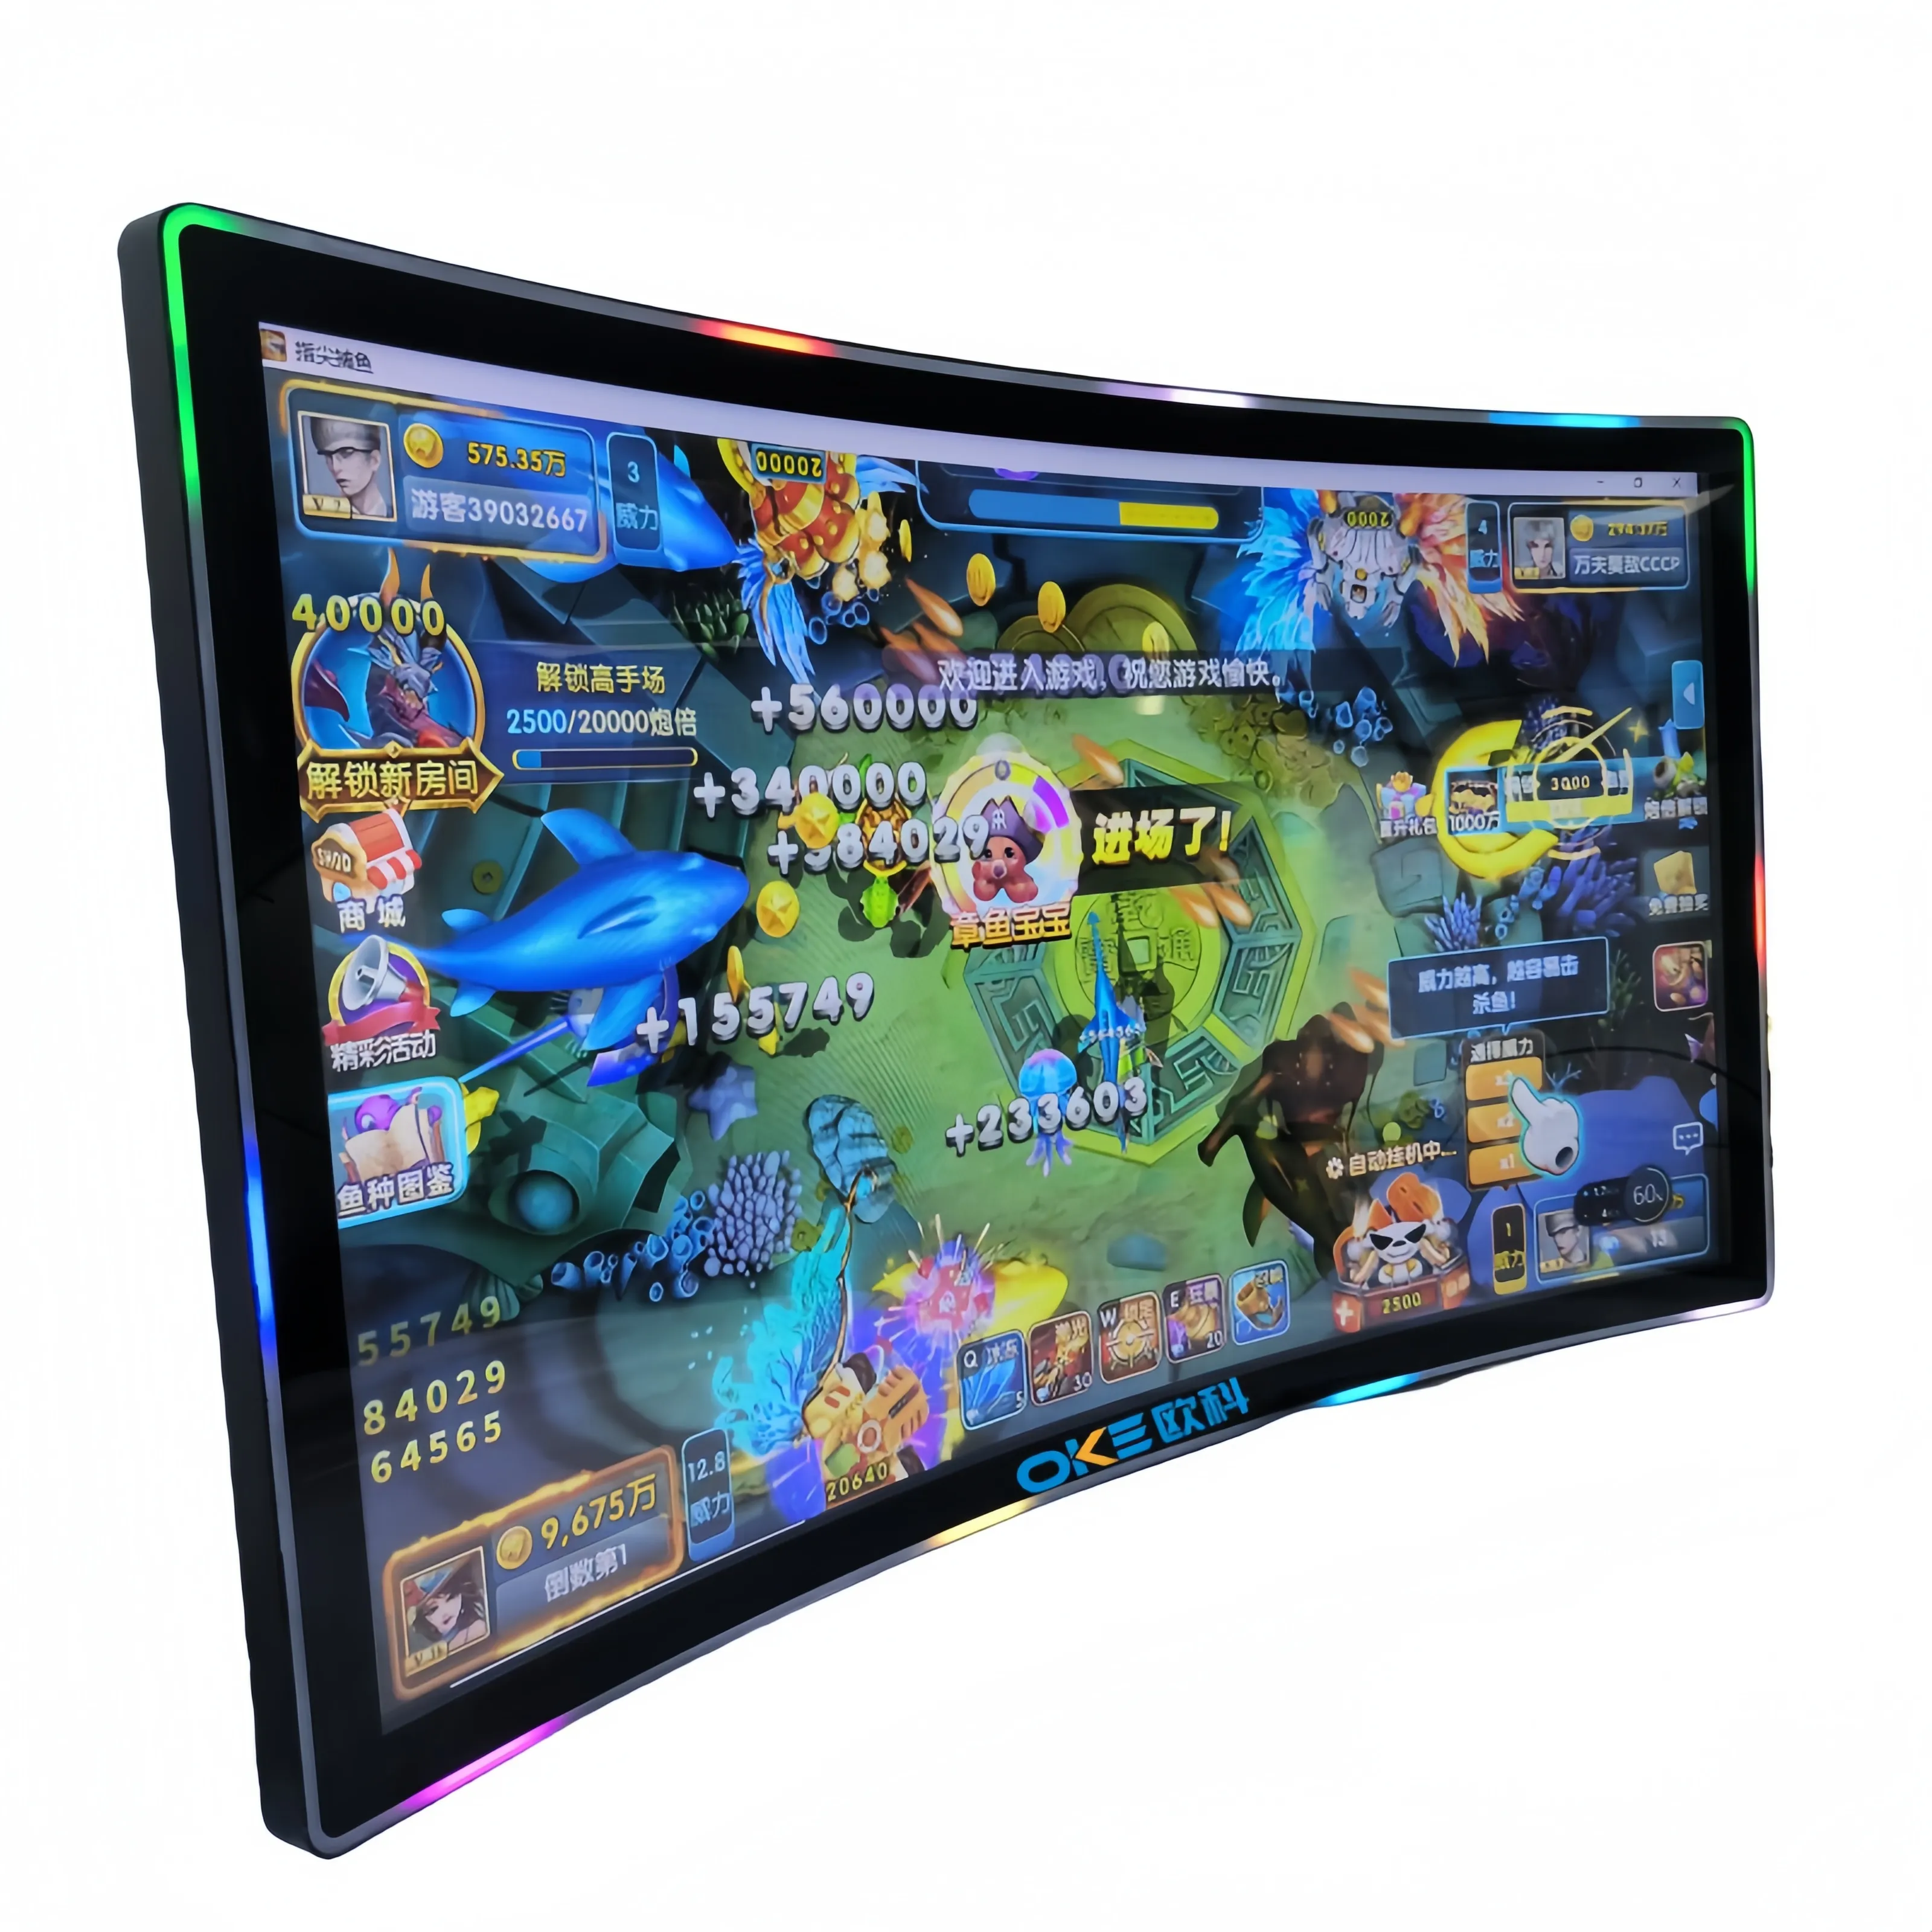 OKE LCD ekran Tft dokunmatik ekran Panel oyun monitörü çoklu 4K Atm.pos.open şasi makinesi. .. Etc özel boyut 40 puan